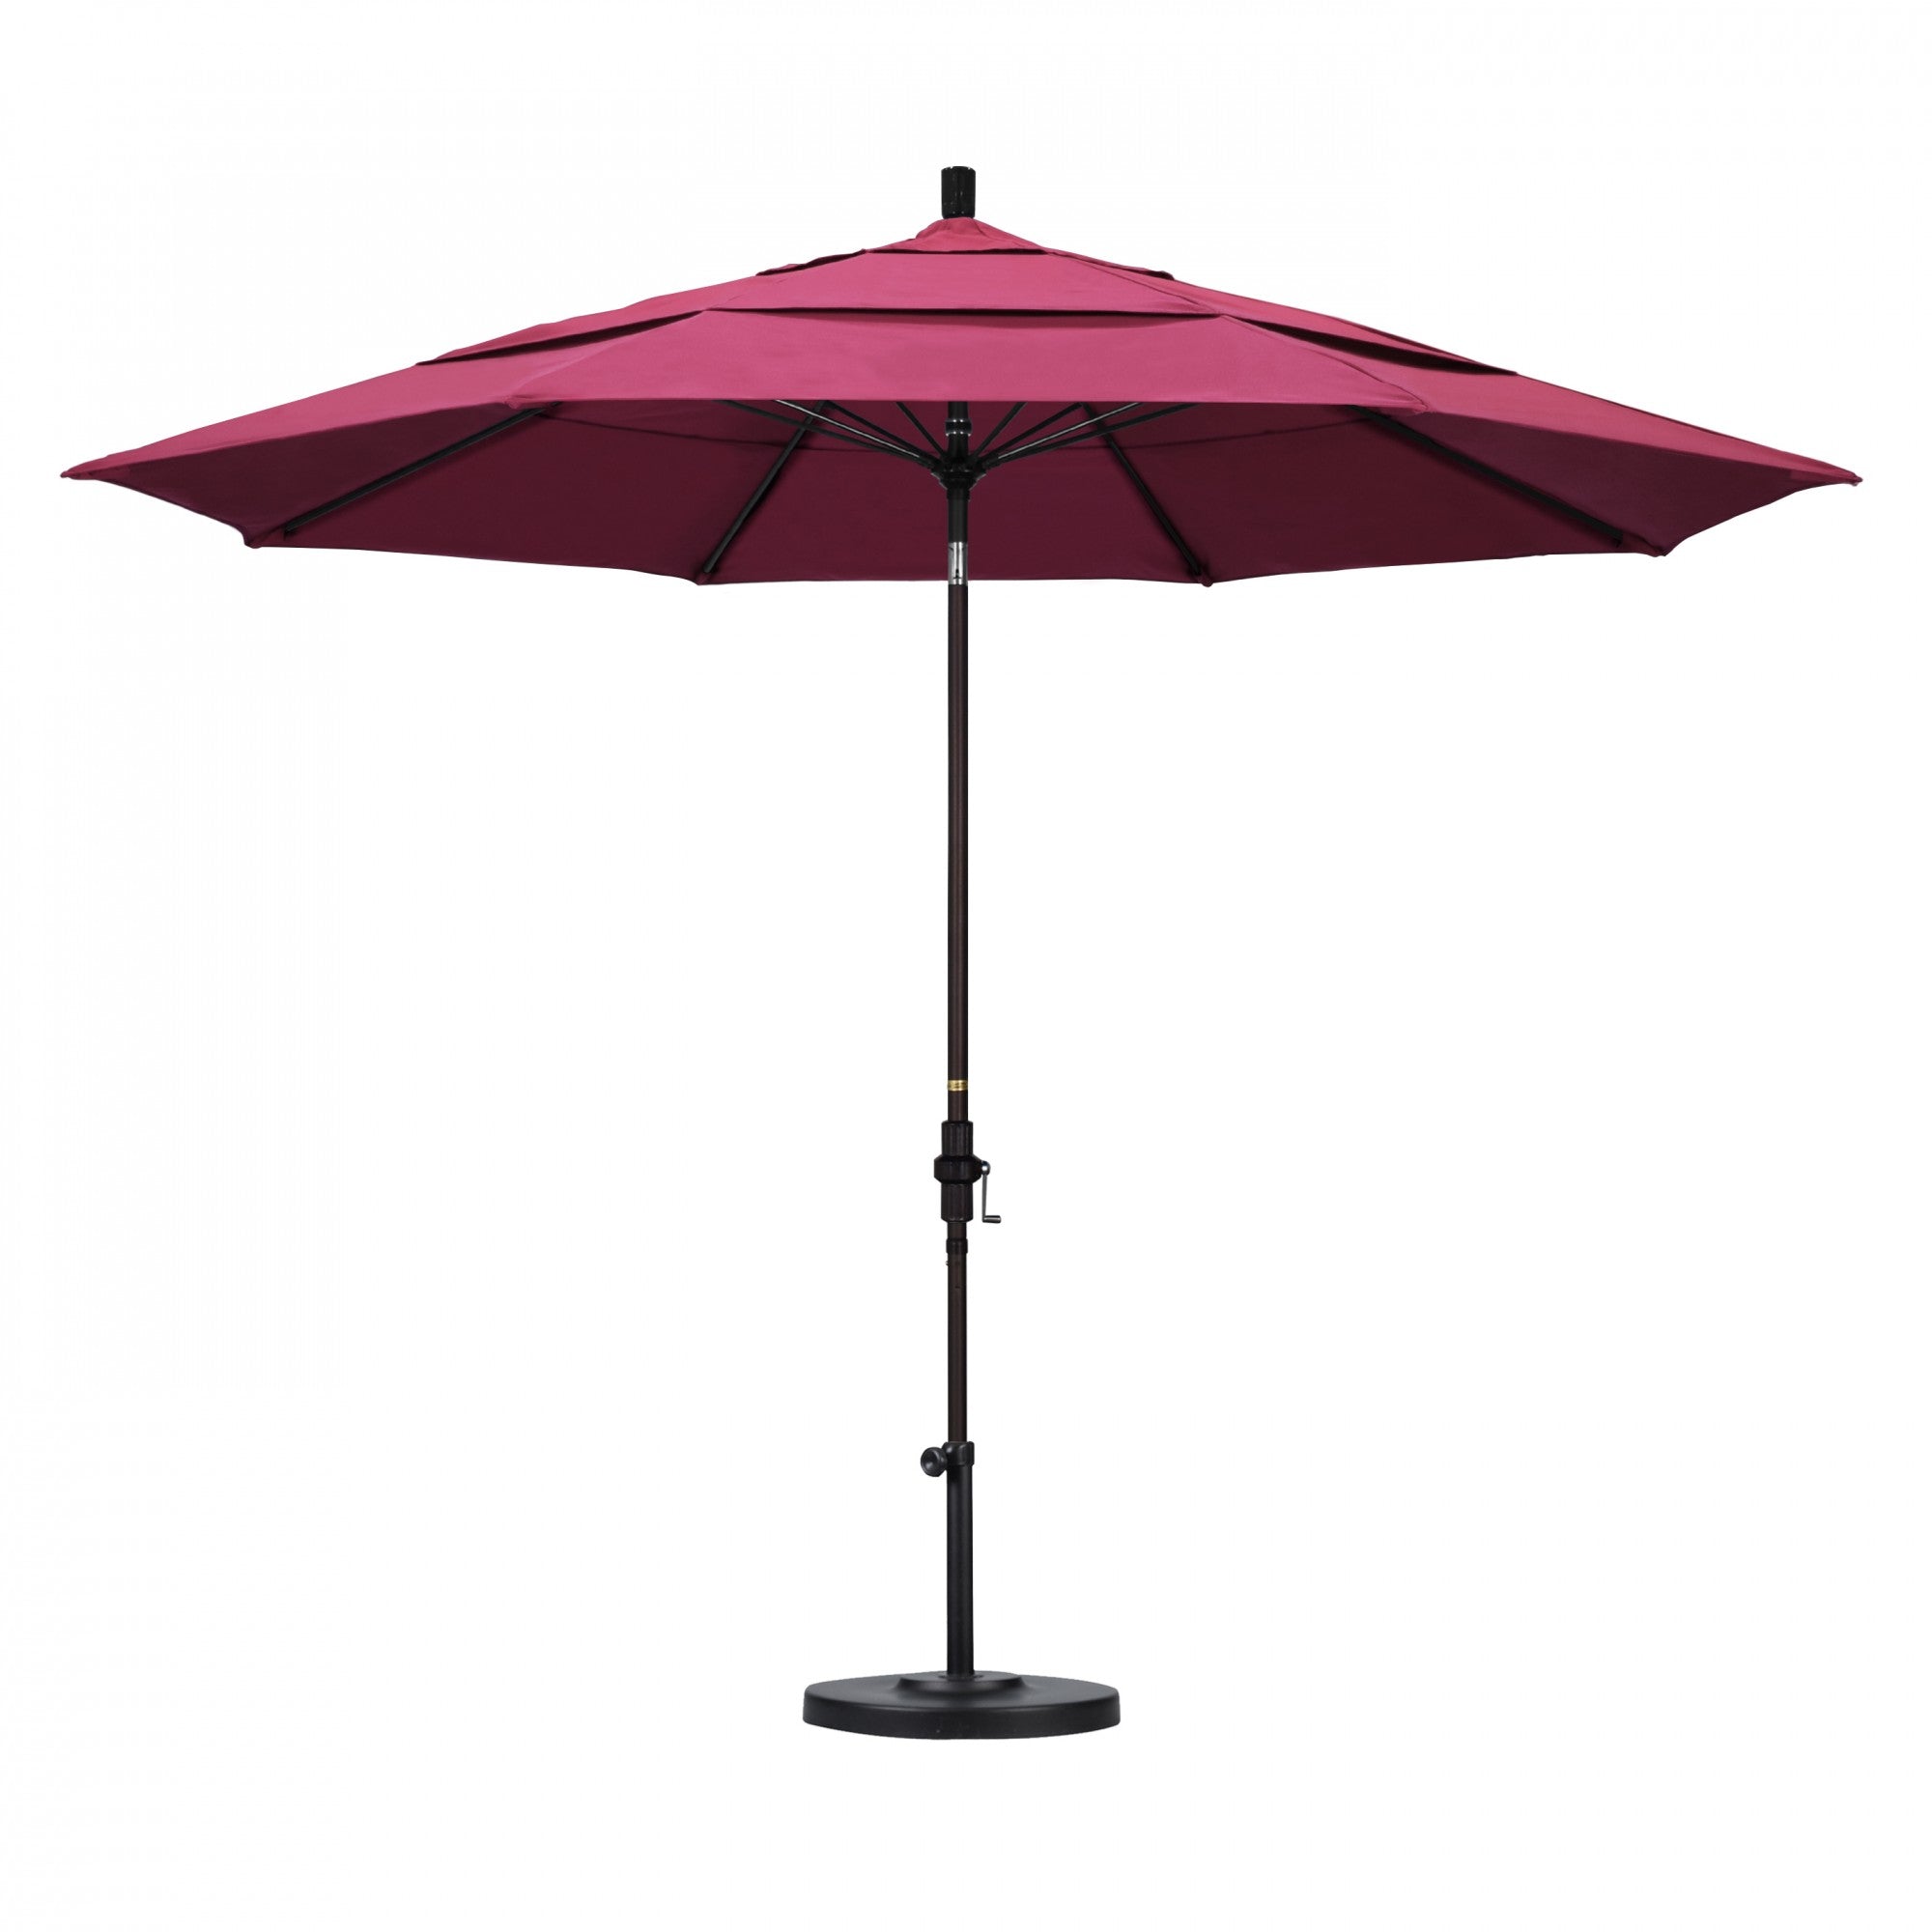 California Umbrella - 11' - Patio Umbrella Umbrella - Aluminum Pole - Hot Pink - Sunbrella  - GSCUF118117-5462-DWV